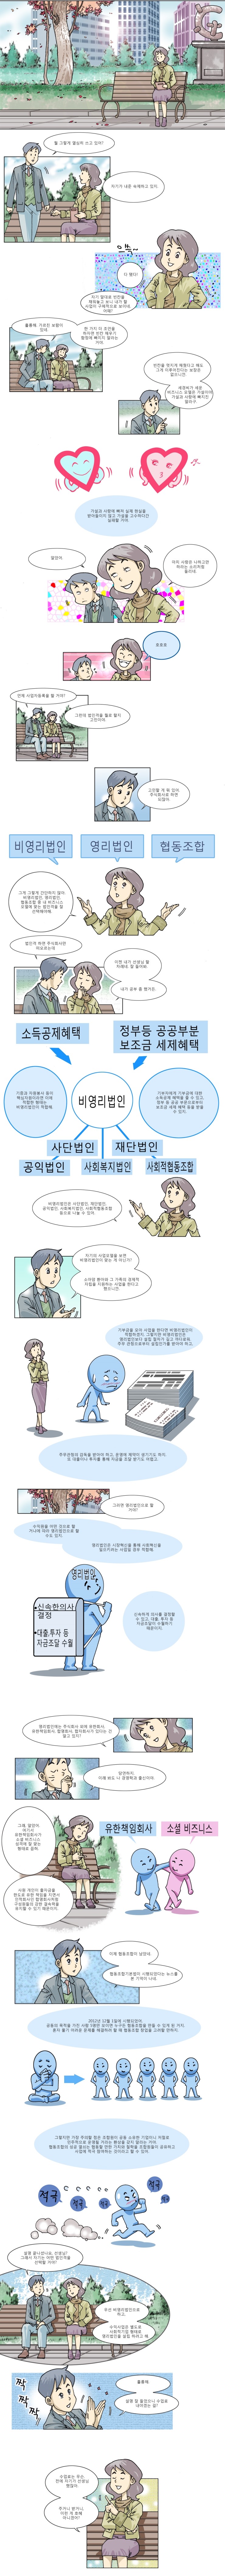 웹툰-사경이와-세모의-산타회사-만들기2